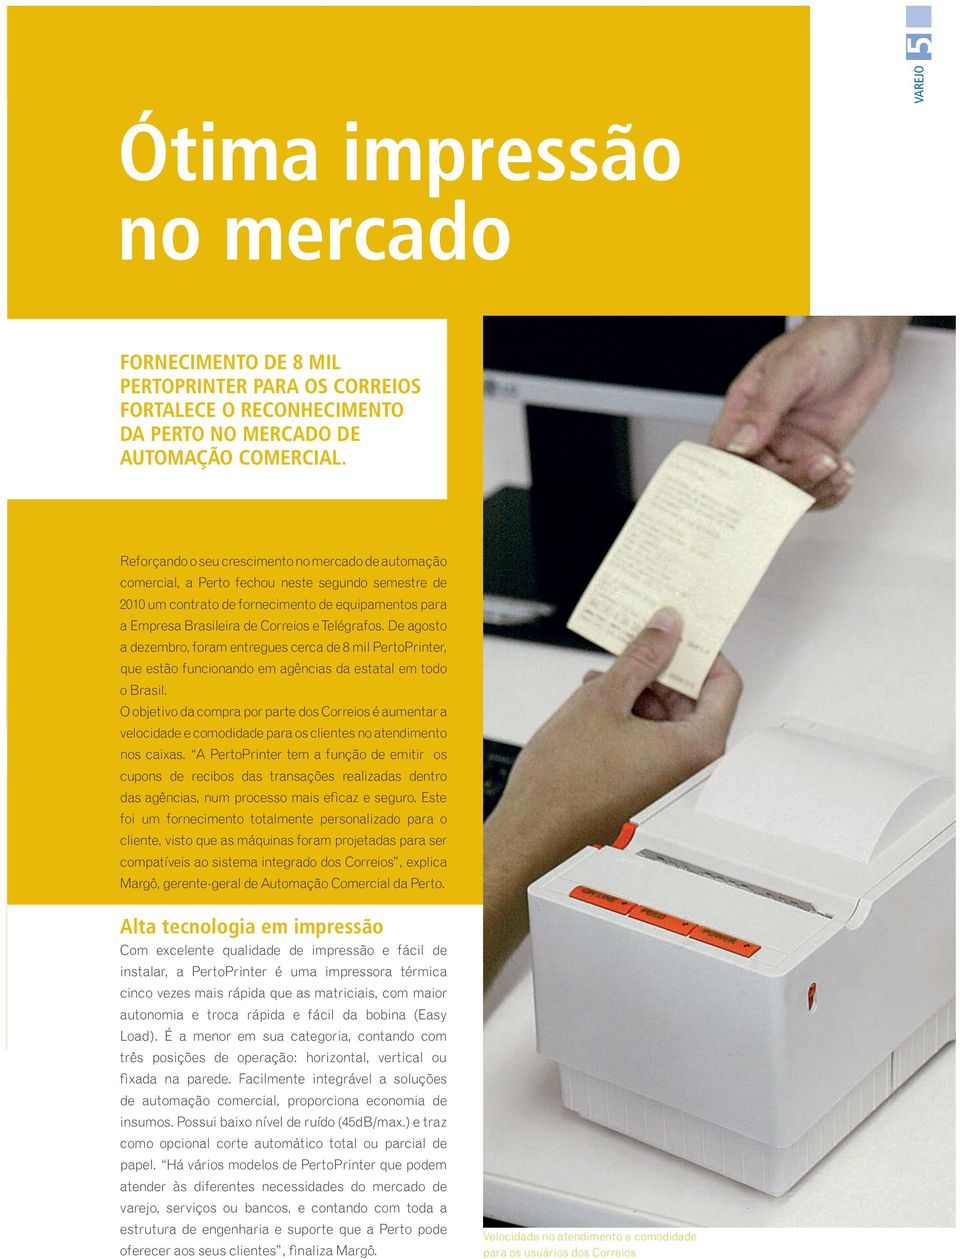 Telégrafos. De agosto a dezembro, foram entregues cerca de 8 mil PertoPrinter, que estão funcionando em agências da estatal em todo o Brasil.